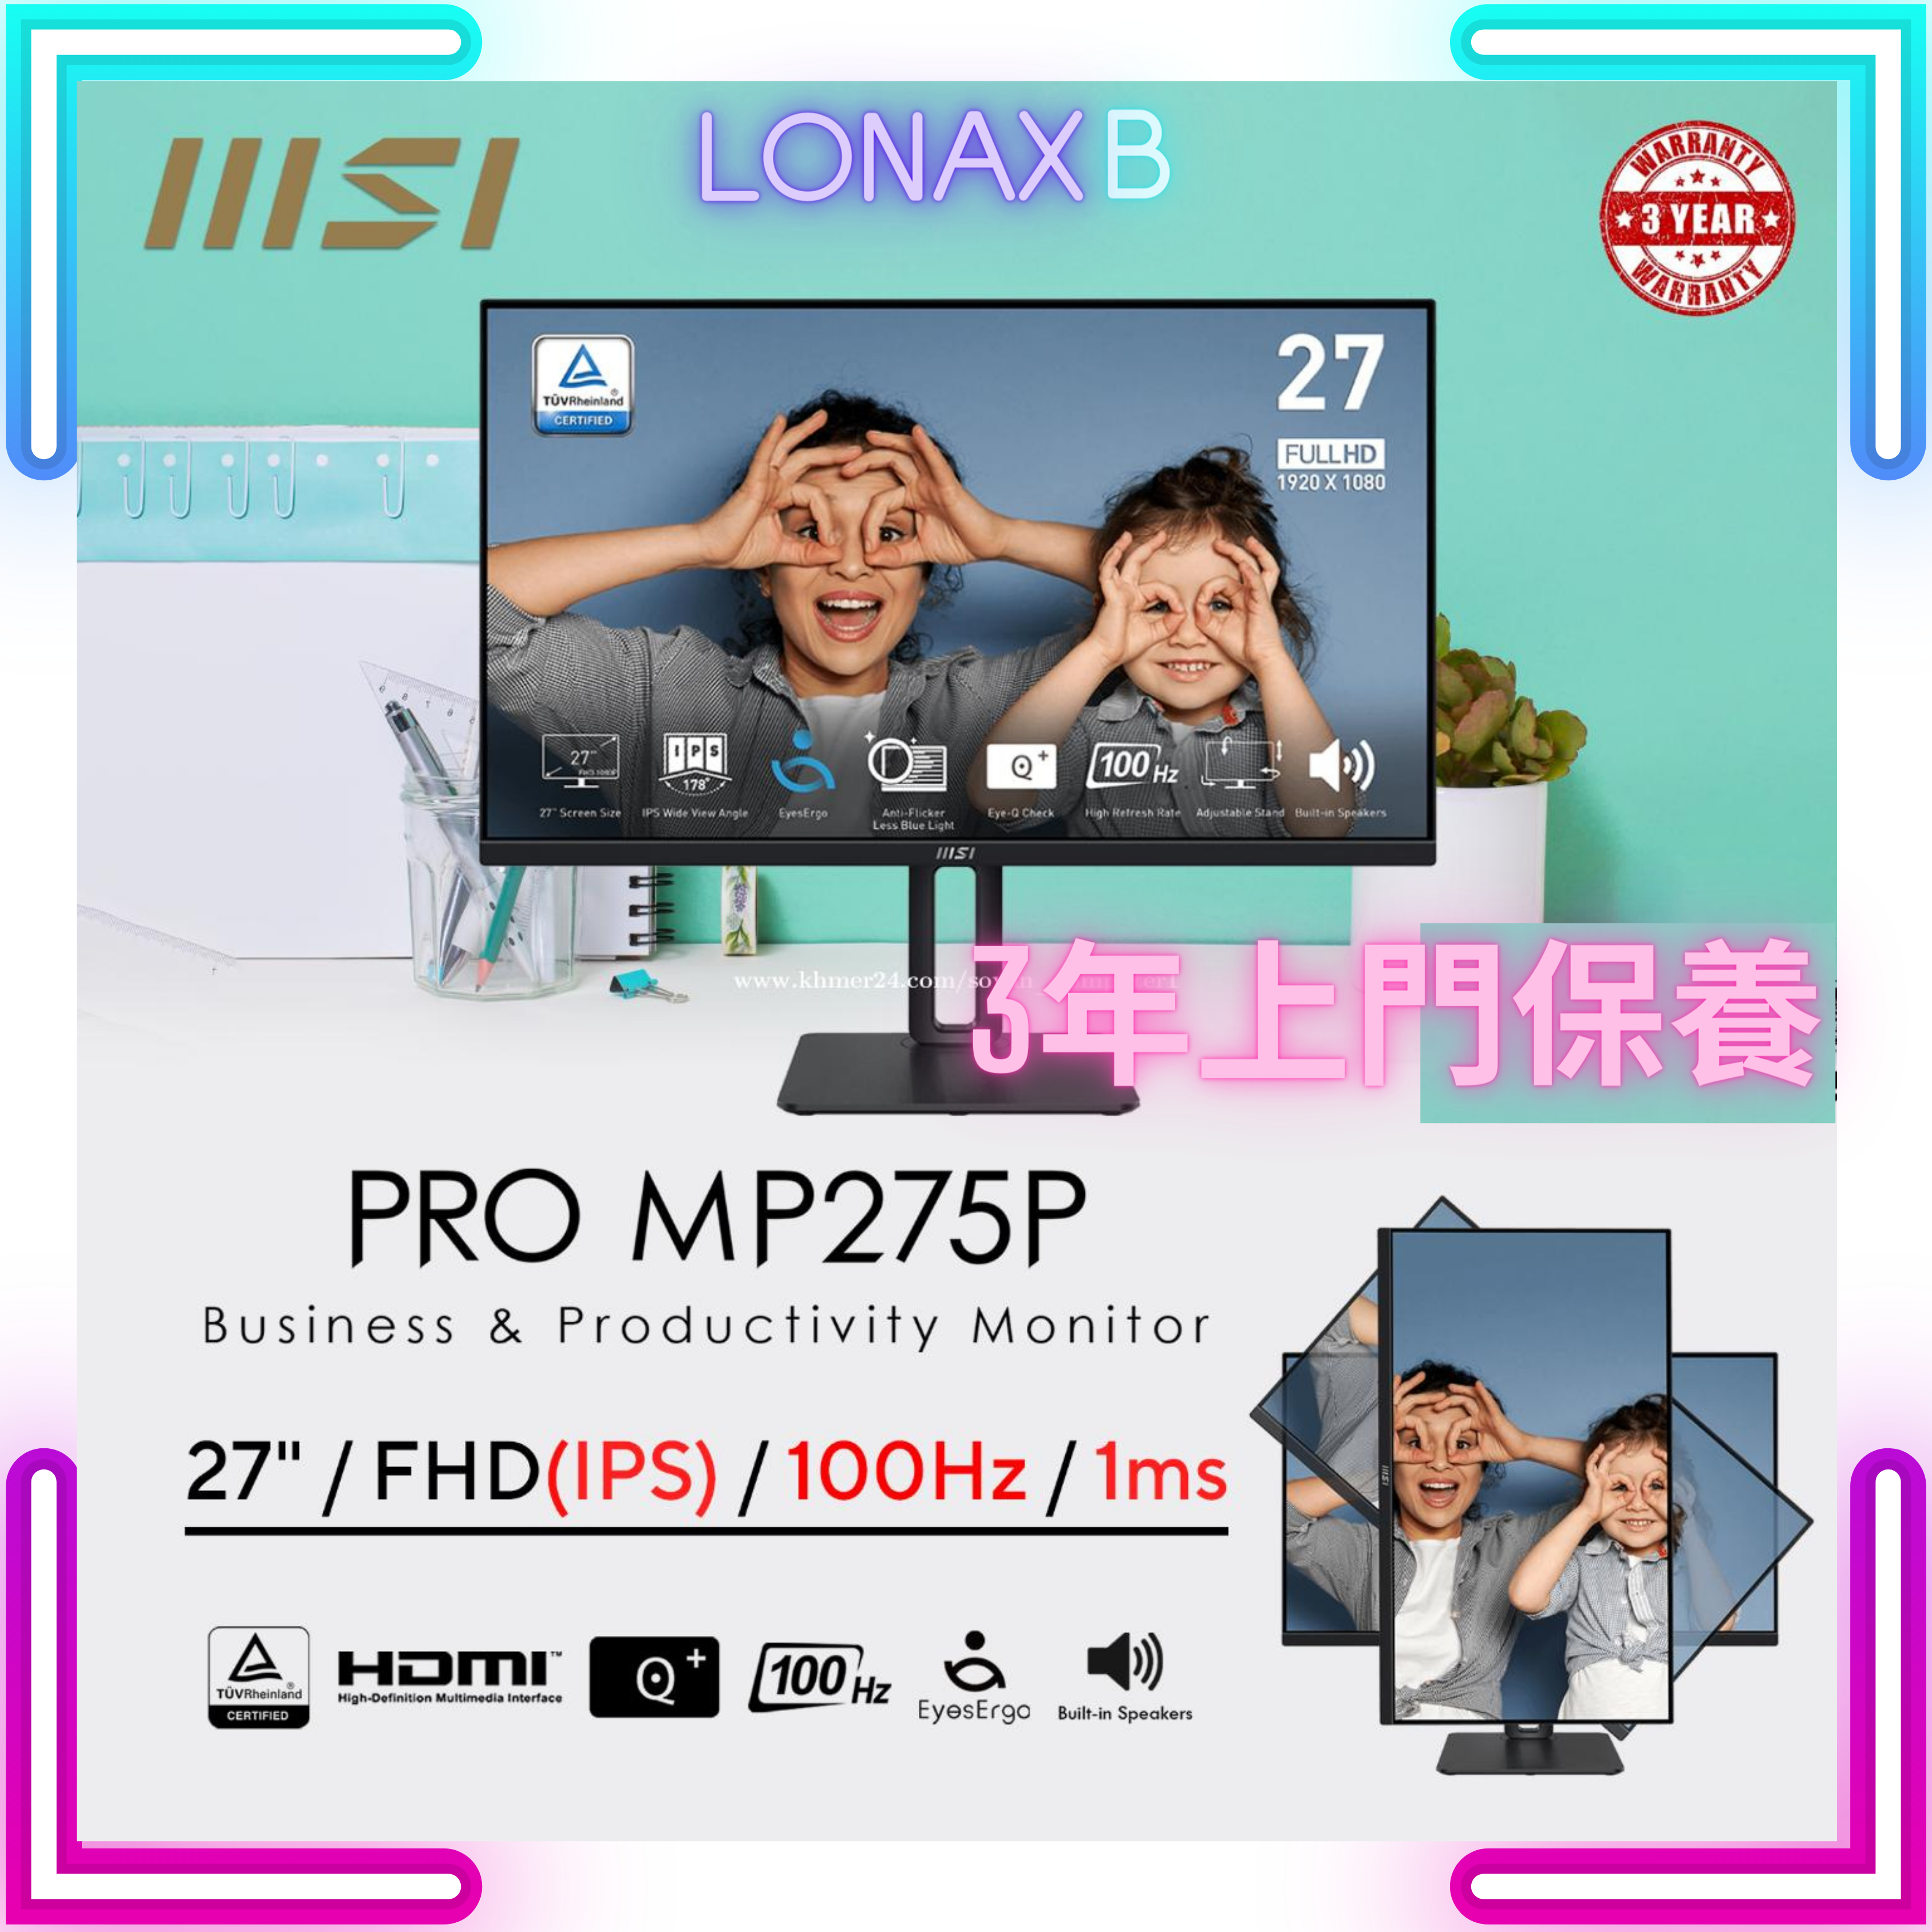 MSI 微星 Pro MP275P 專業顯示器 (27吋 / FHD / 100Hz / IPS / 內置喇叭 / 可調升降、90度調整) - 1920 x 1080  3年上門保養